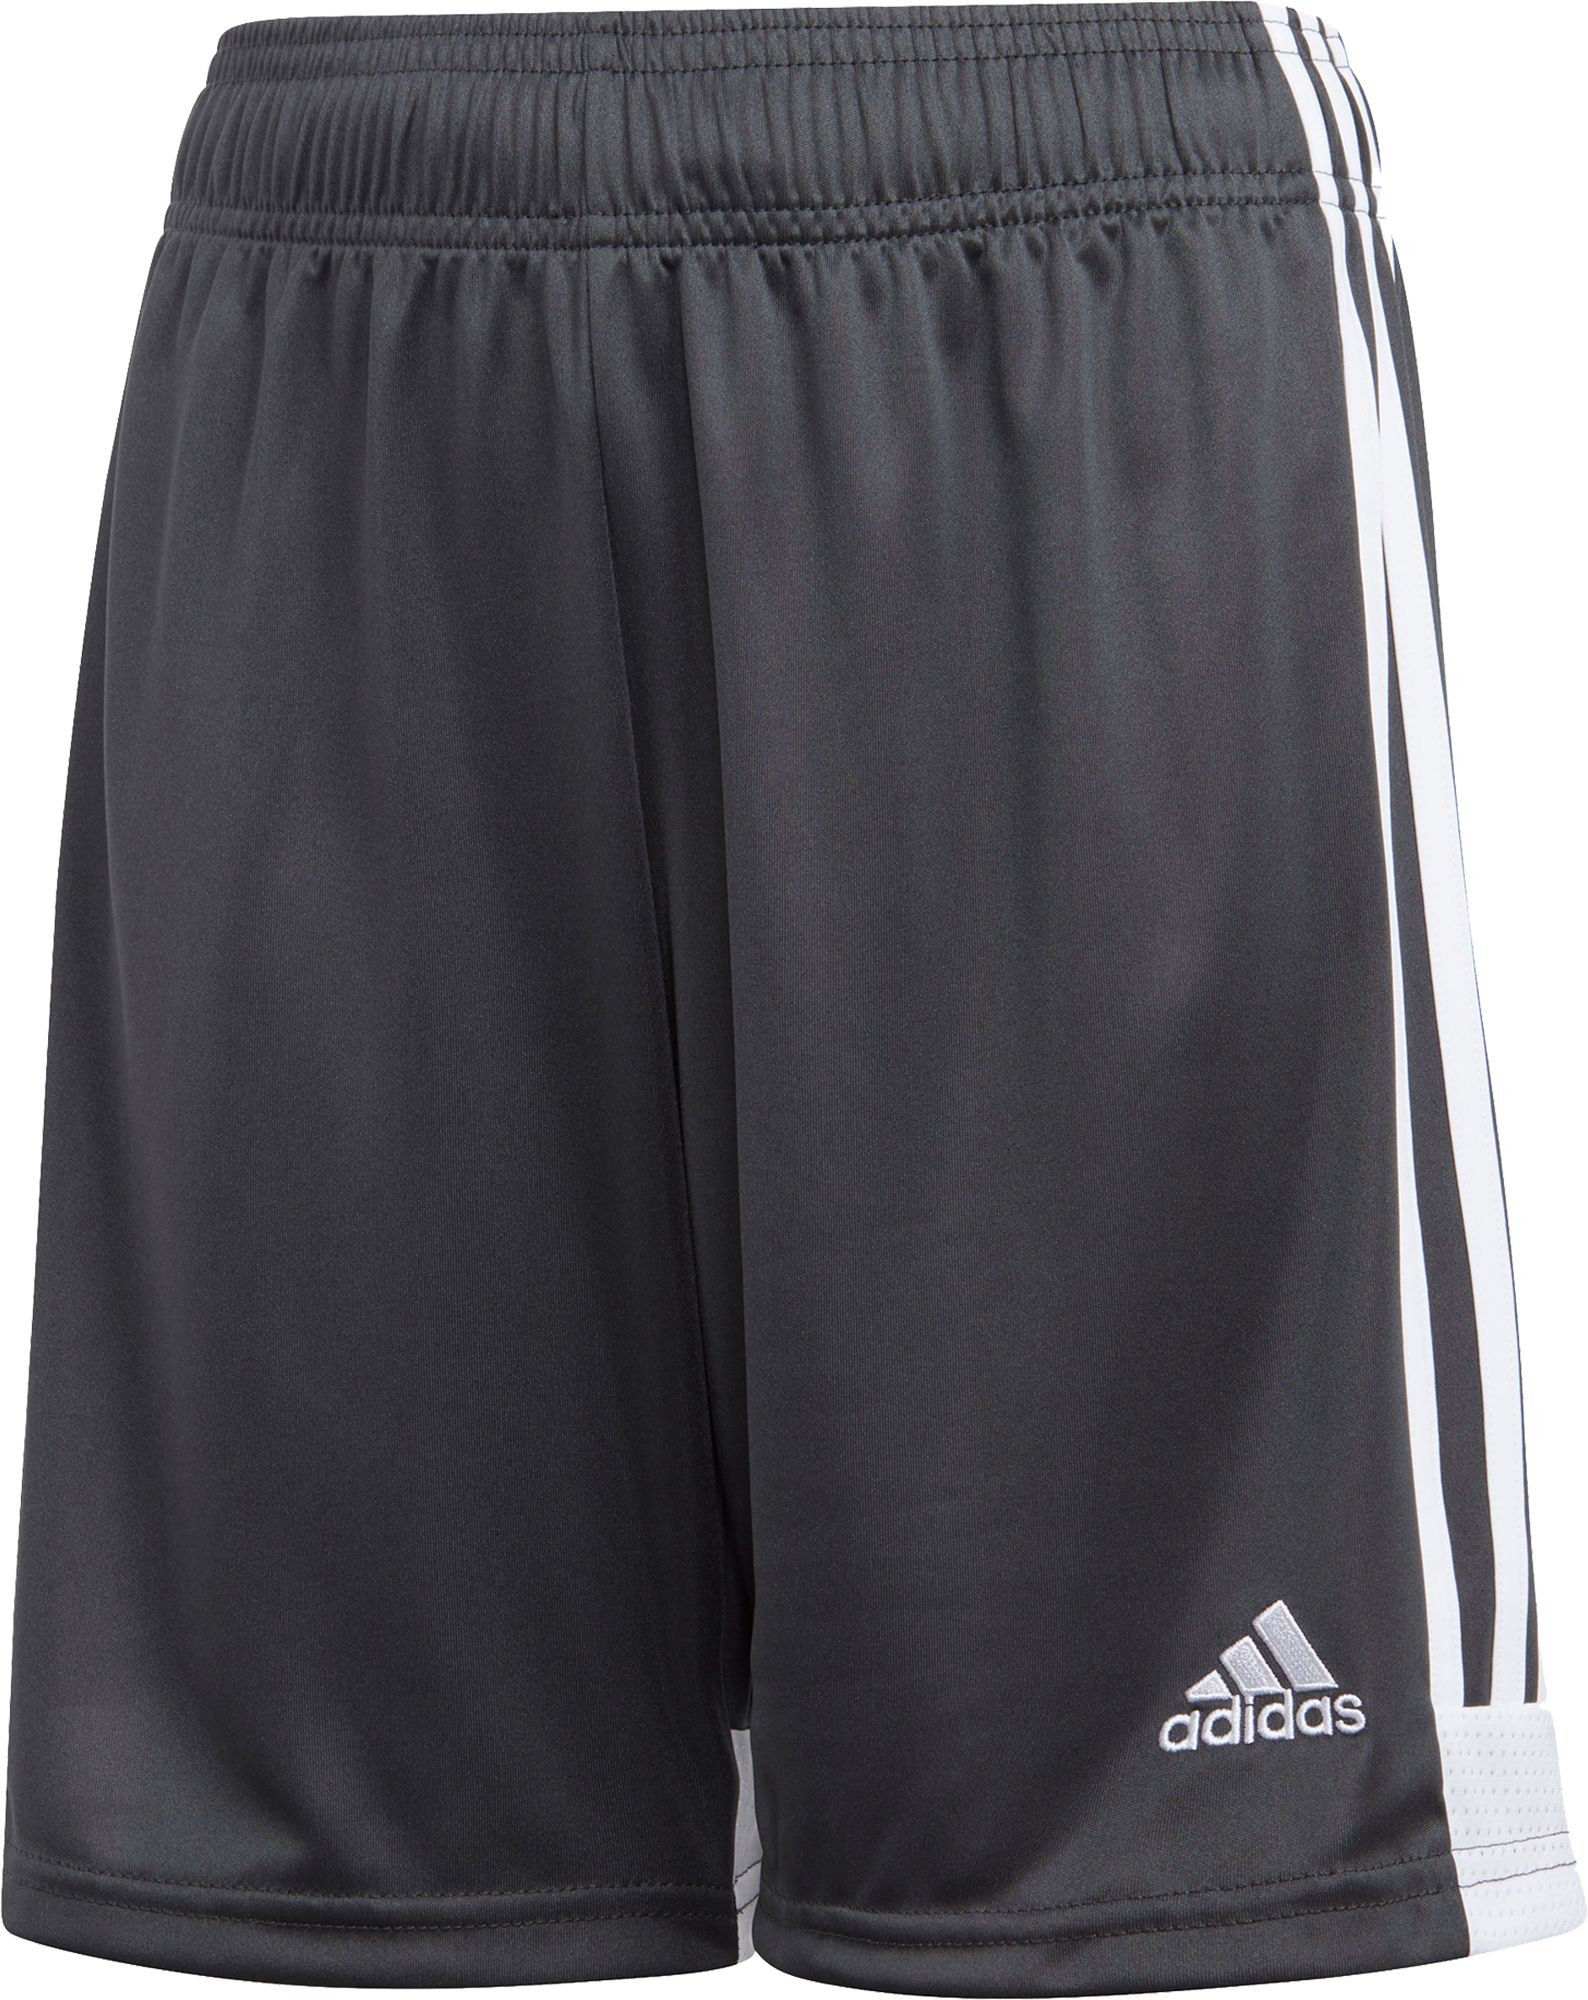 adidas youth soccer shorts